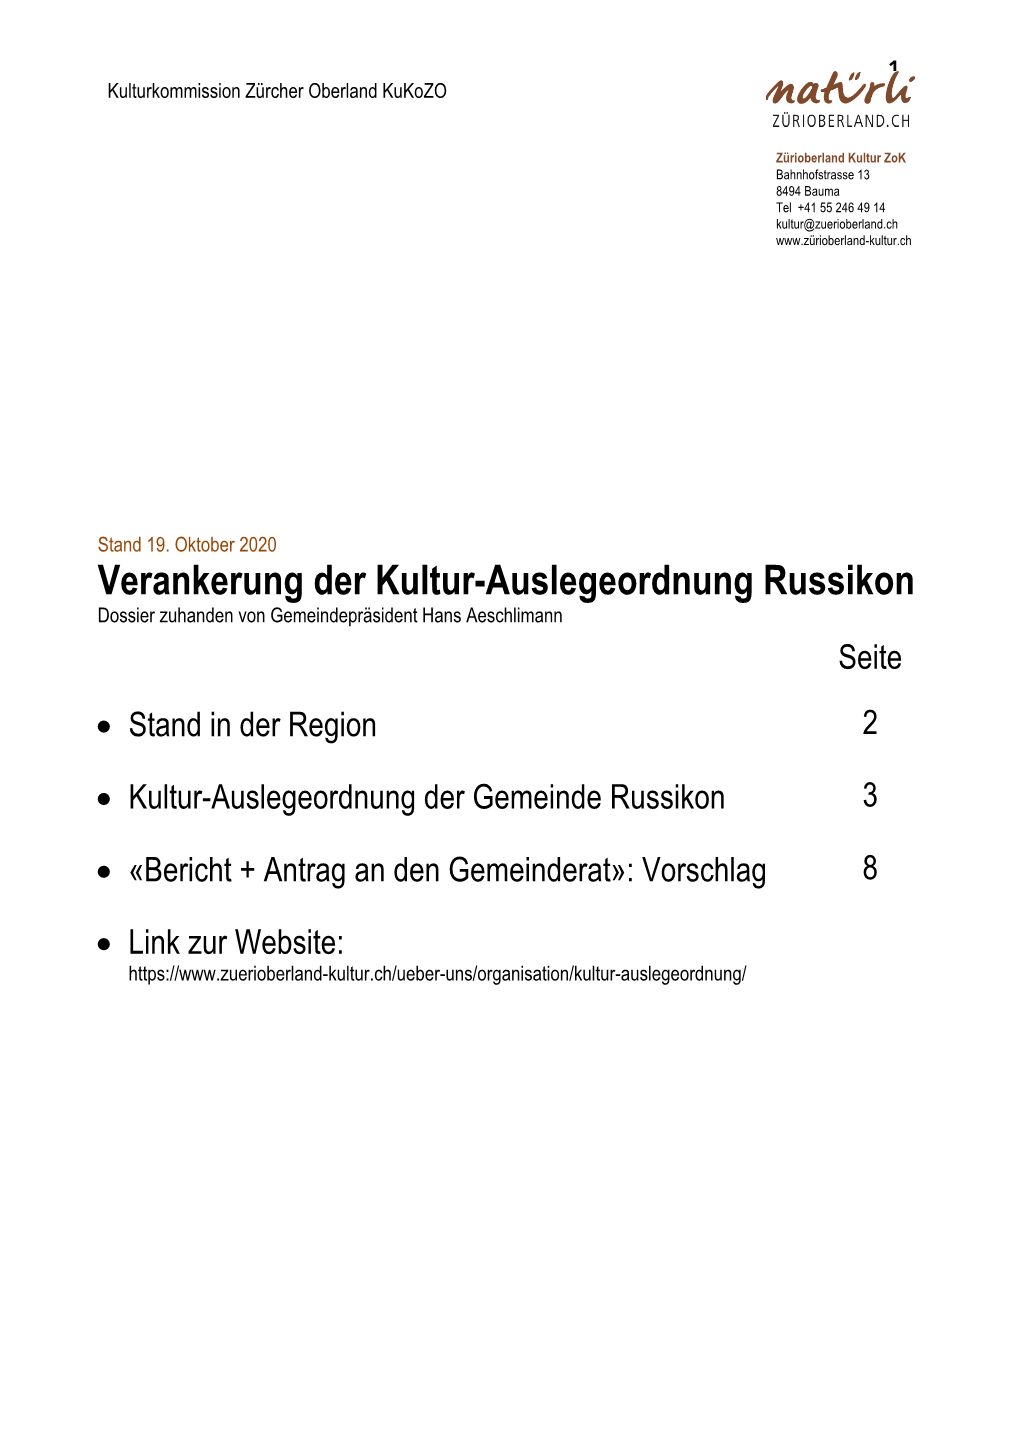 Verankerung Kultur-Auslegeordnung Russikon» Stand 19. Oktober 2020